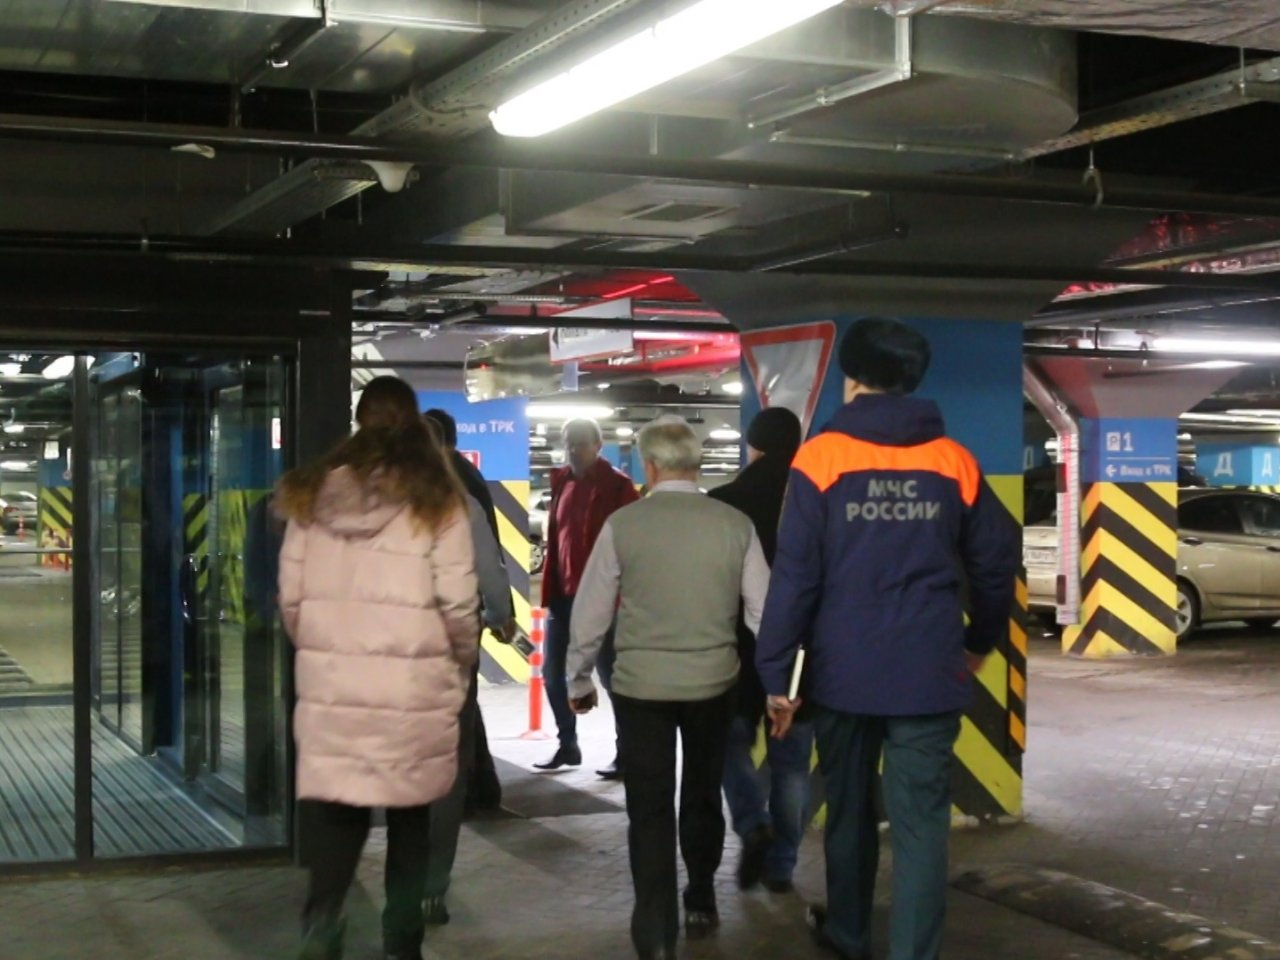 МЧС проверило эвакуационные выходы ТЦ "Небо" после скандального видео (ФОТО, ВИДЕО)